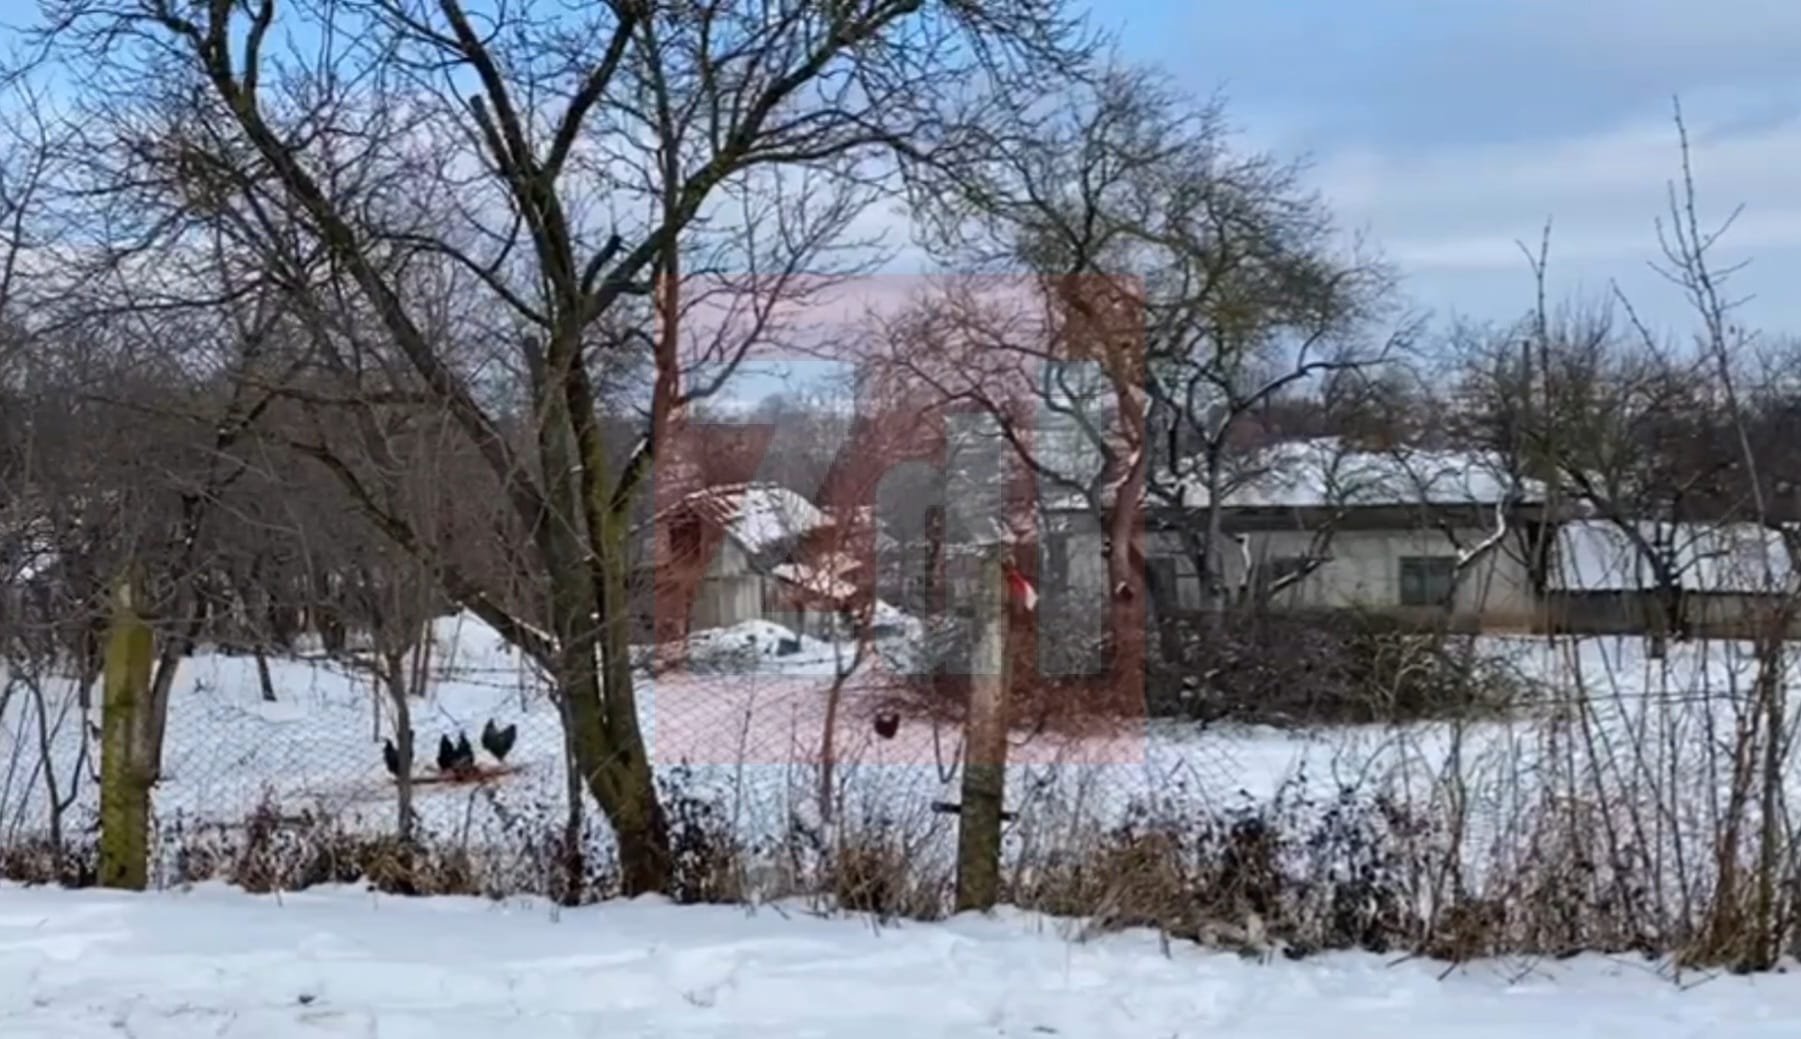  Un bărbat din Ruginoasa şi-a decapitat mama, iar apoi i-a aruncat corpul în grădină (FOTO-VIDEO)